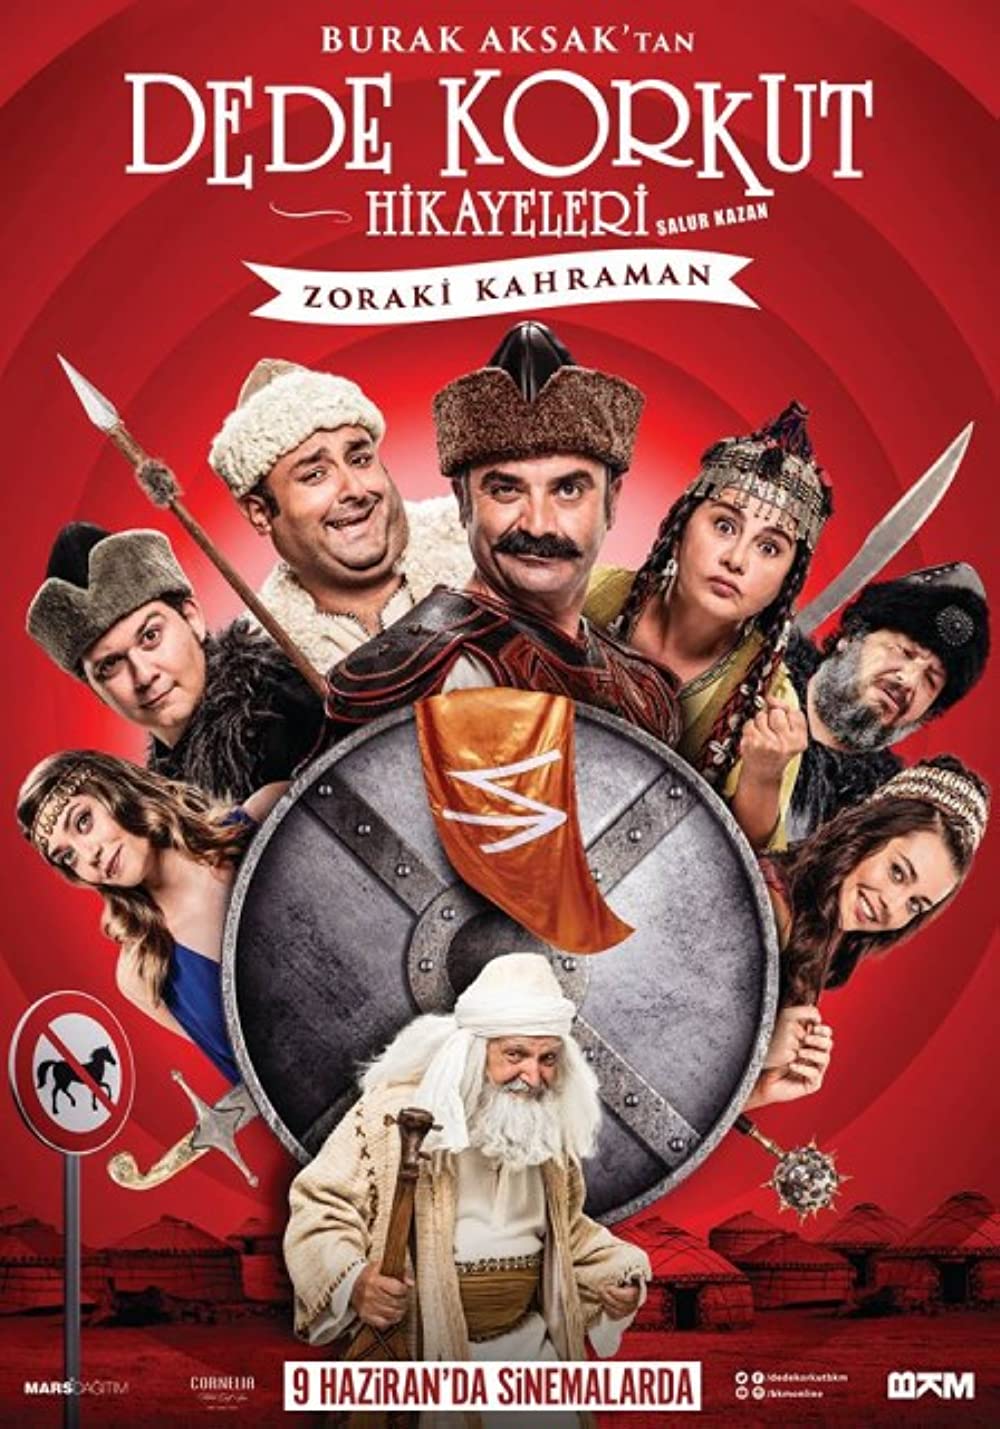 Filmbeschreibung zu Salur Kazan: Zoraki Kahraman